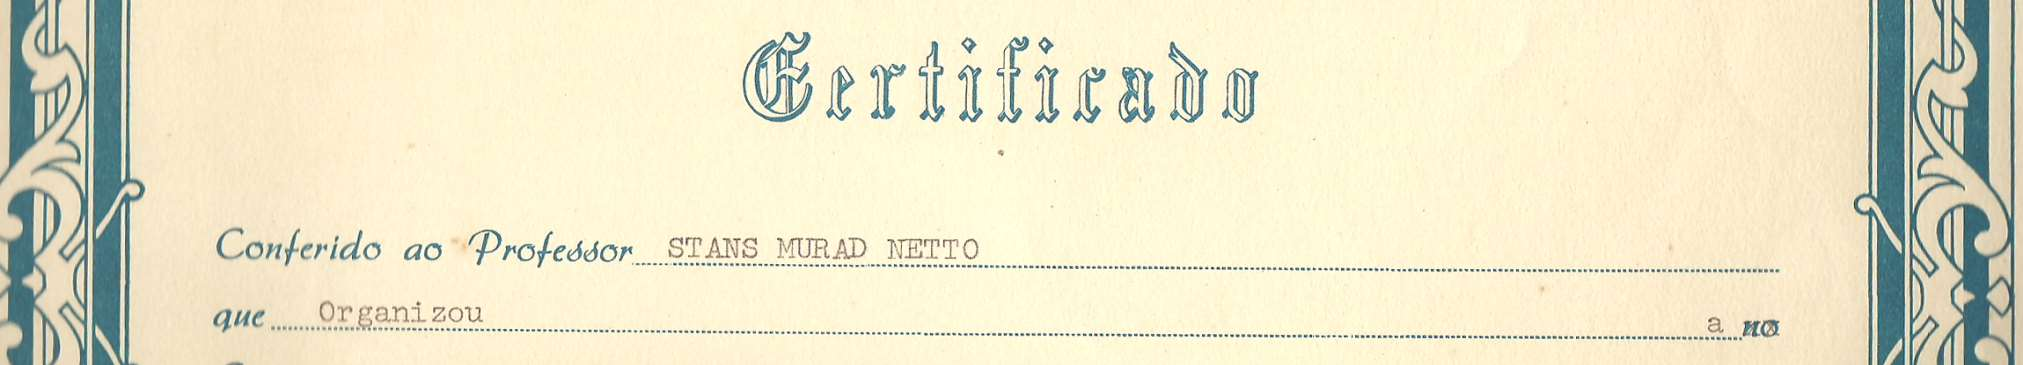 1973:Certificado